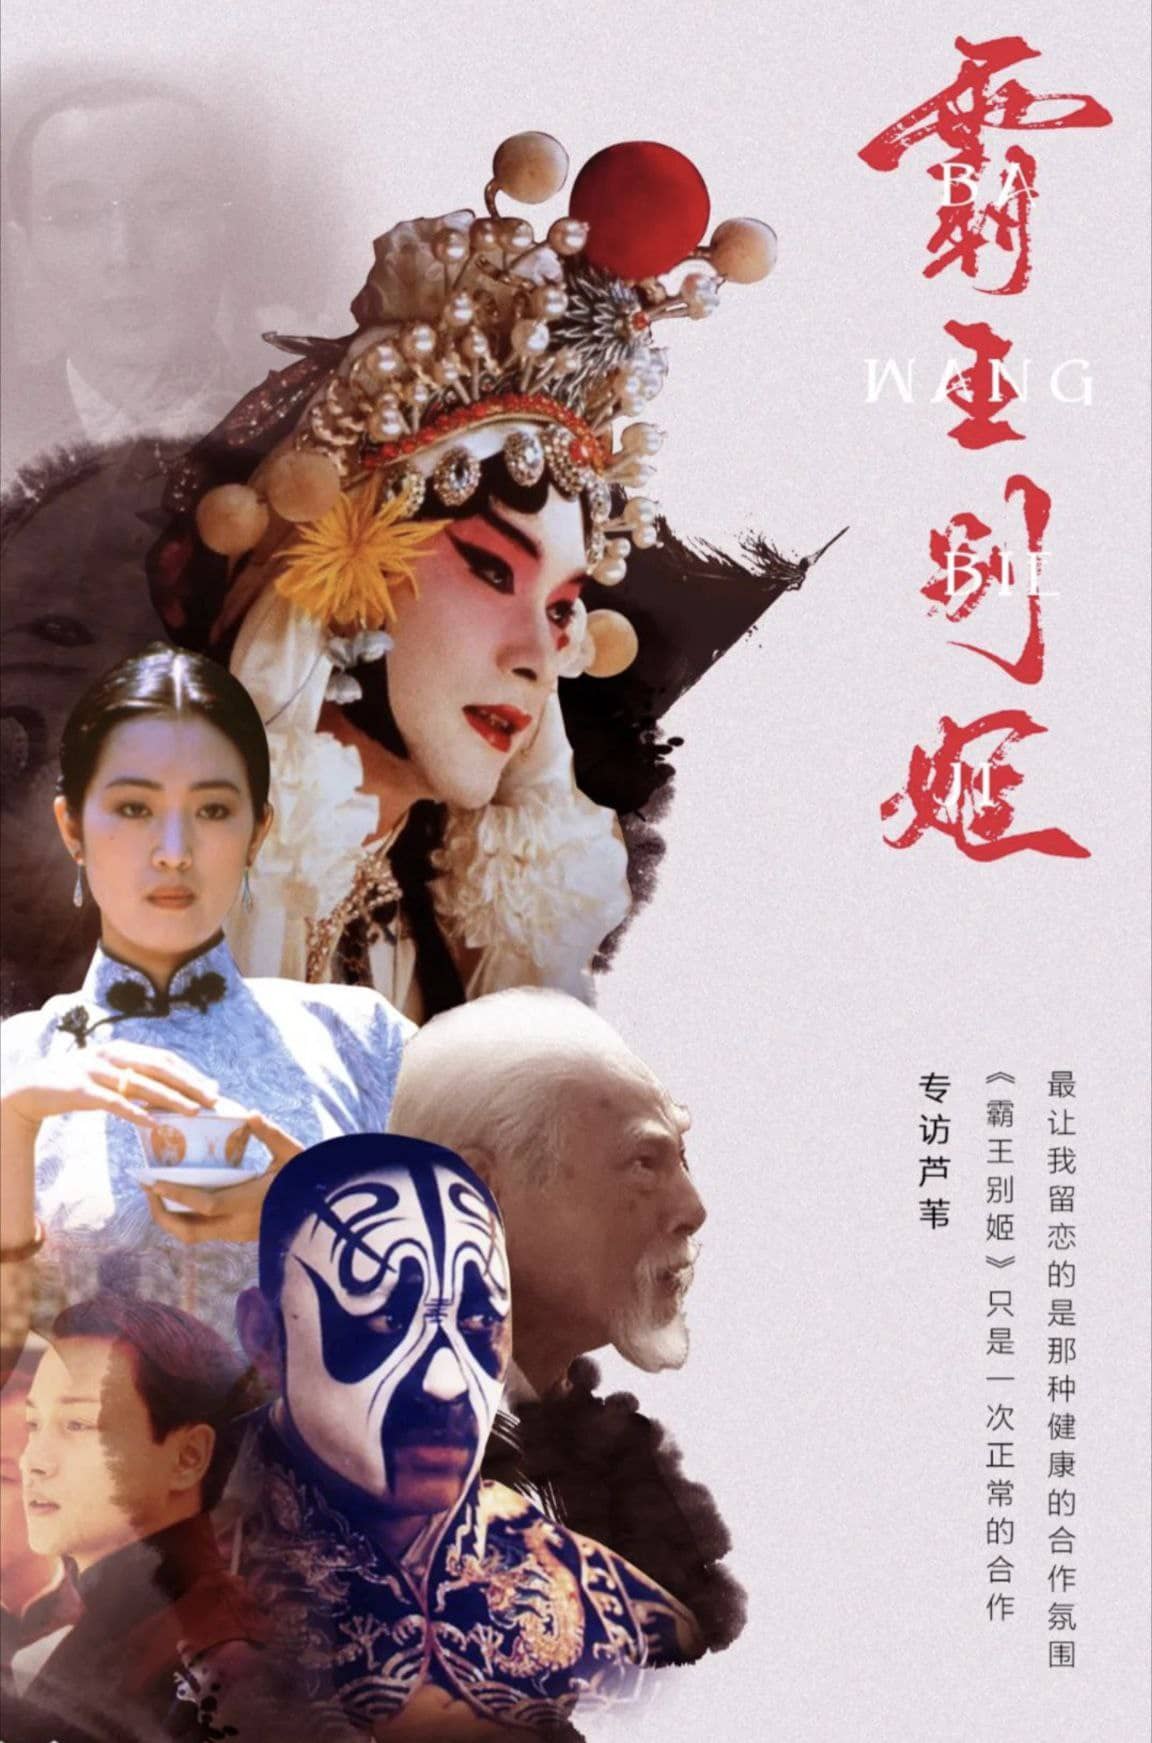 霸王别姬 (1993) 1080P BluRay 国粤双音轨 中字外挂/内嵌字幕